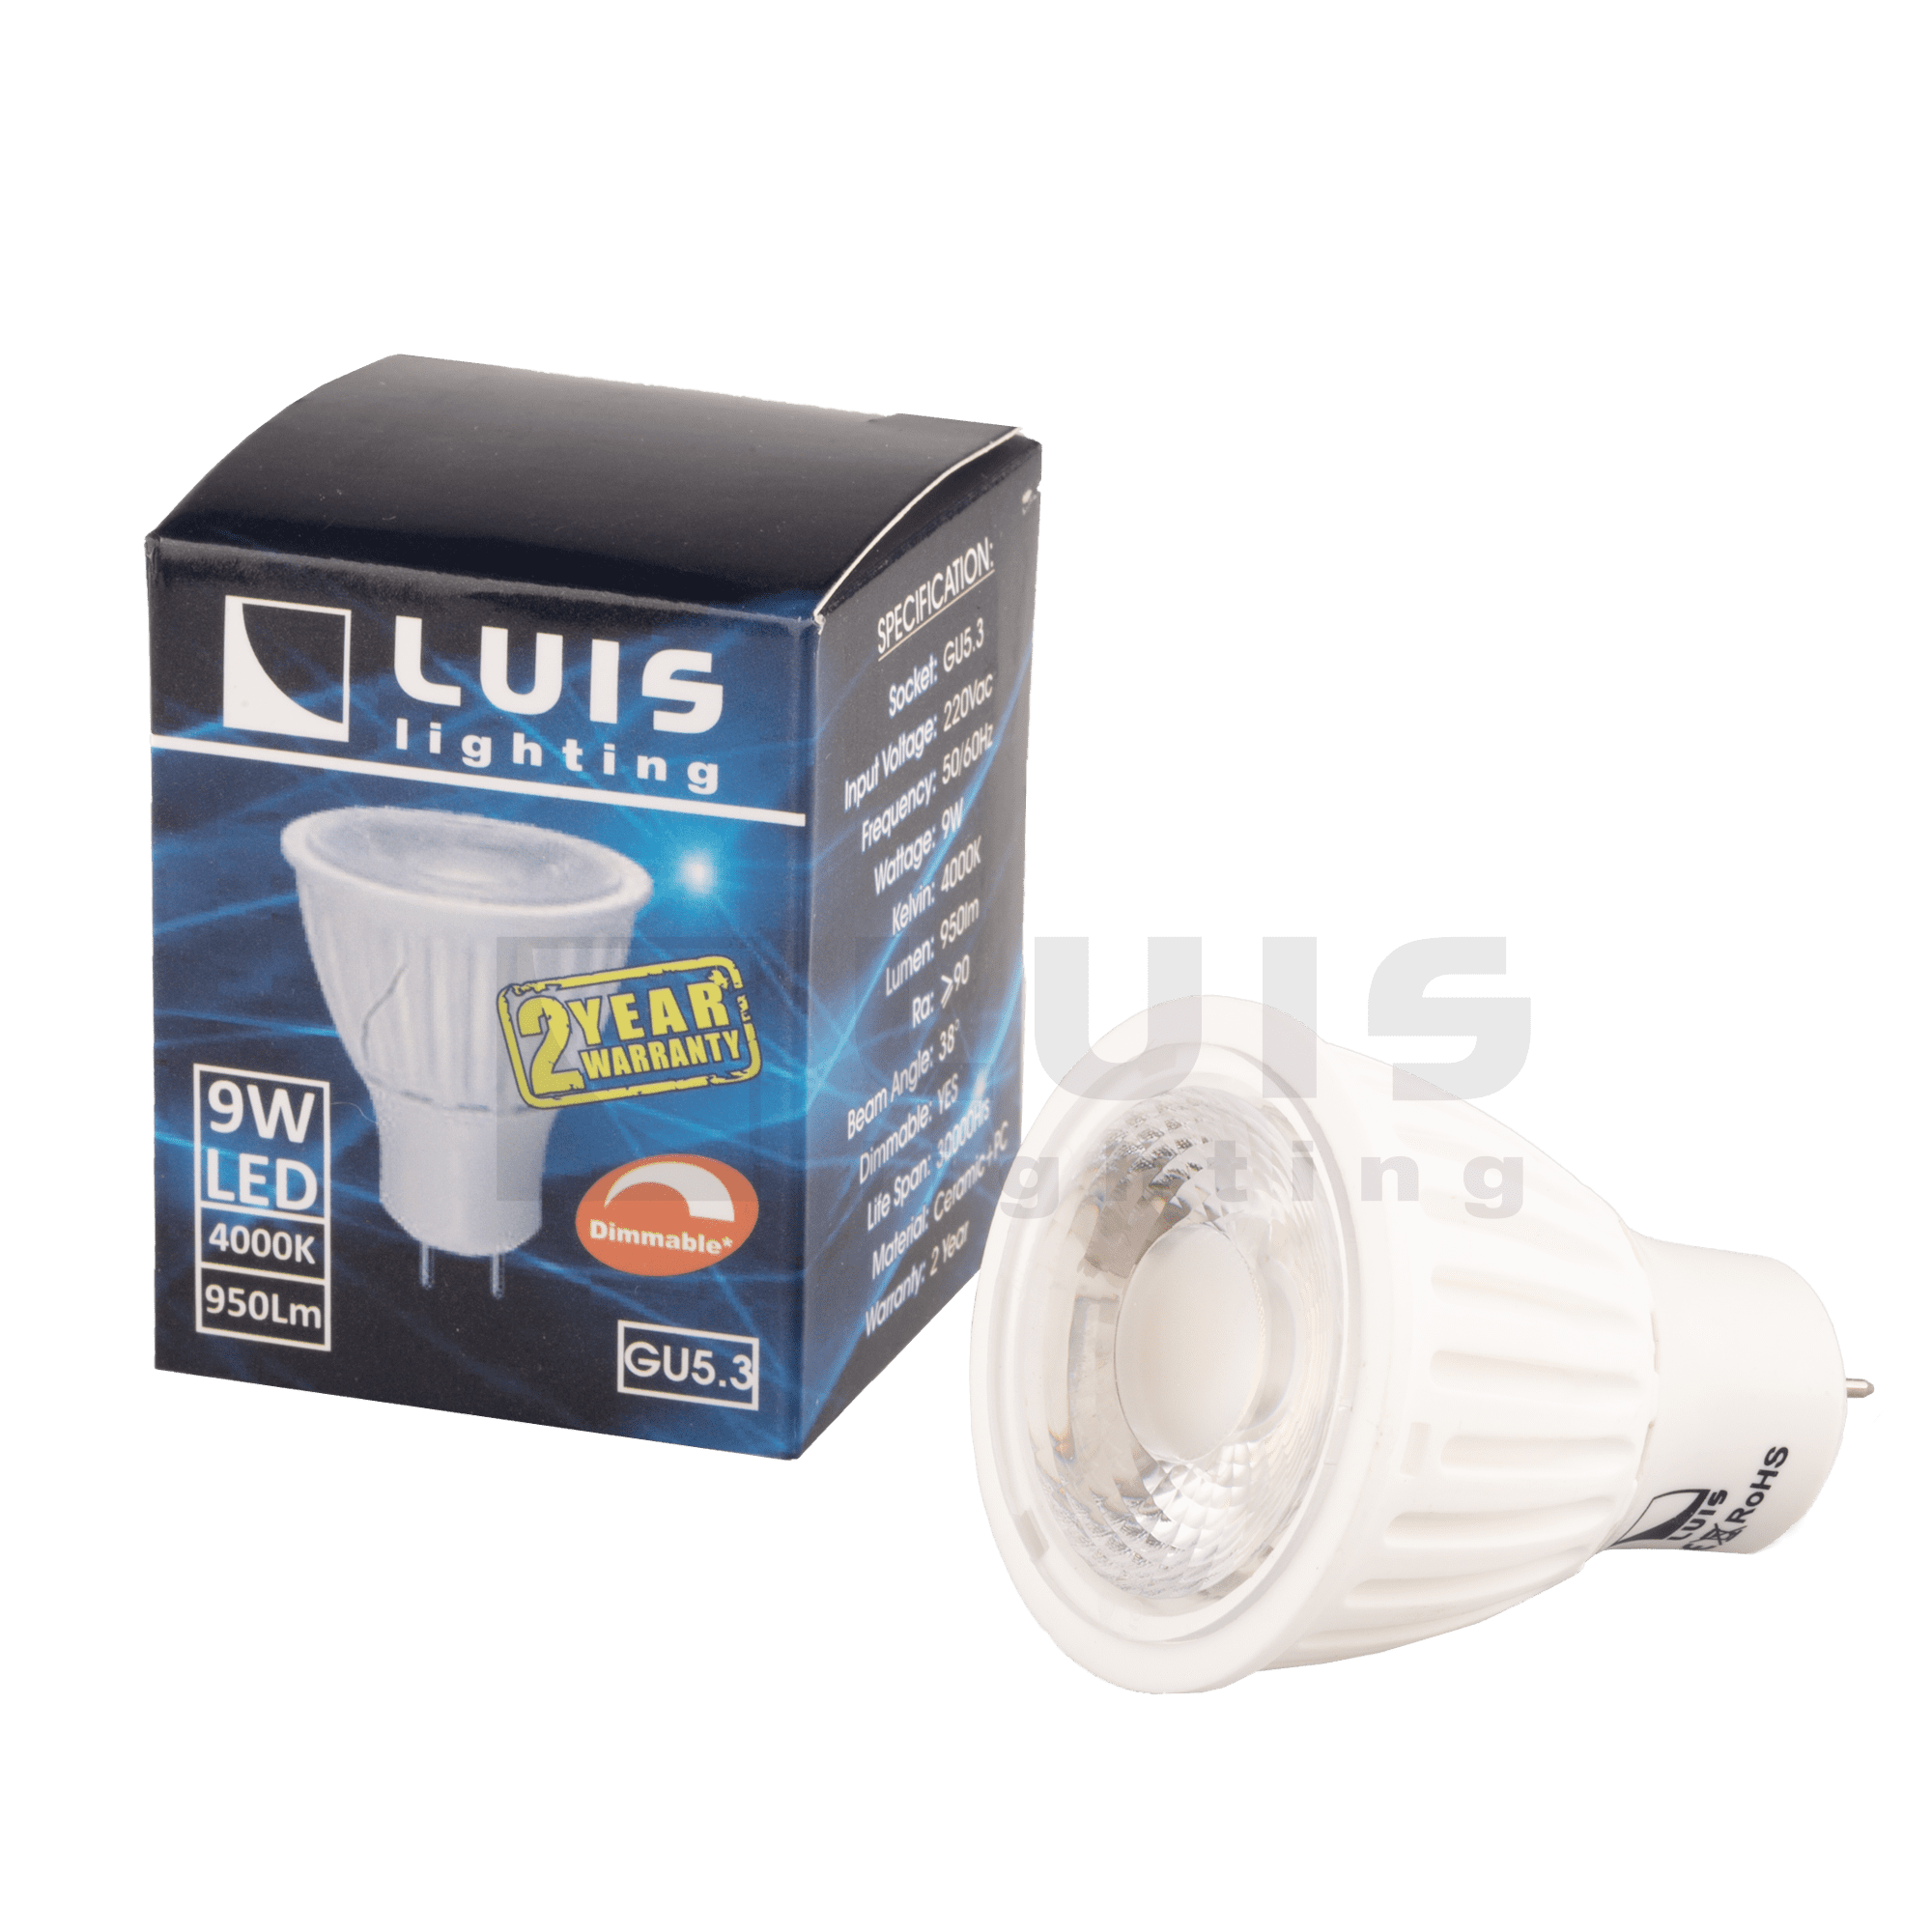 Каталог светодиодных светильников Luis Lighting — товары для освния .